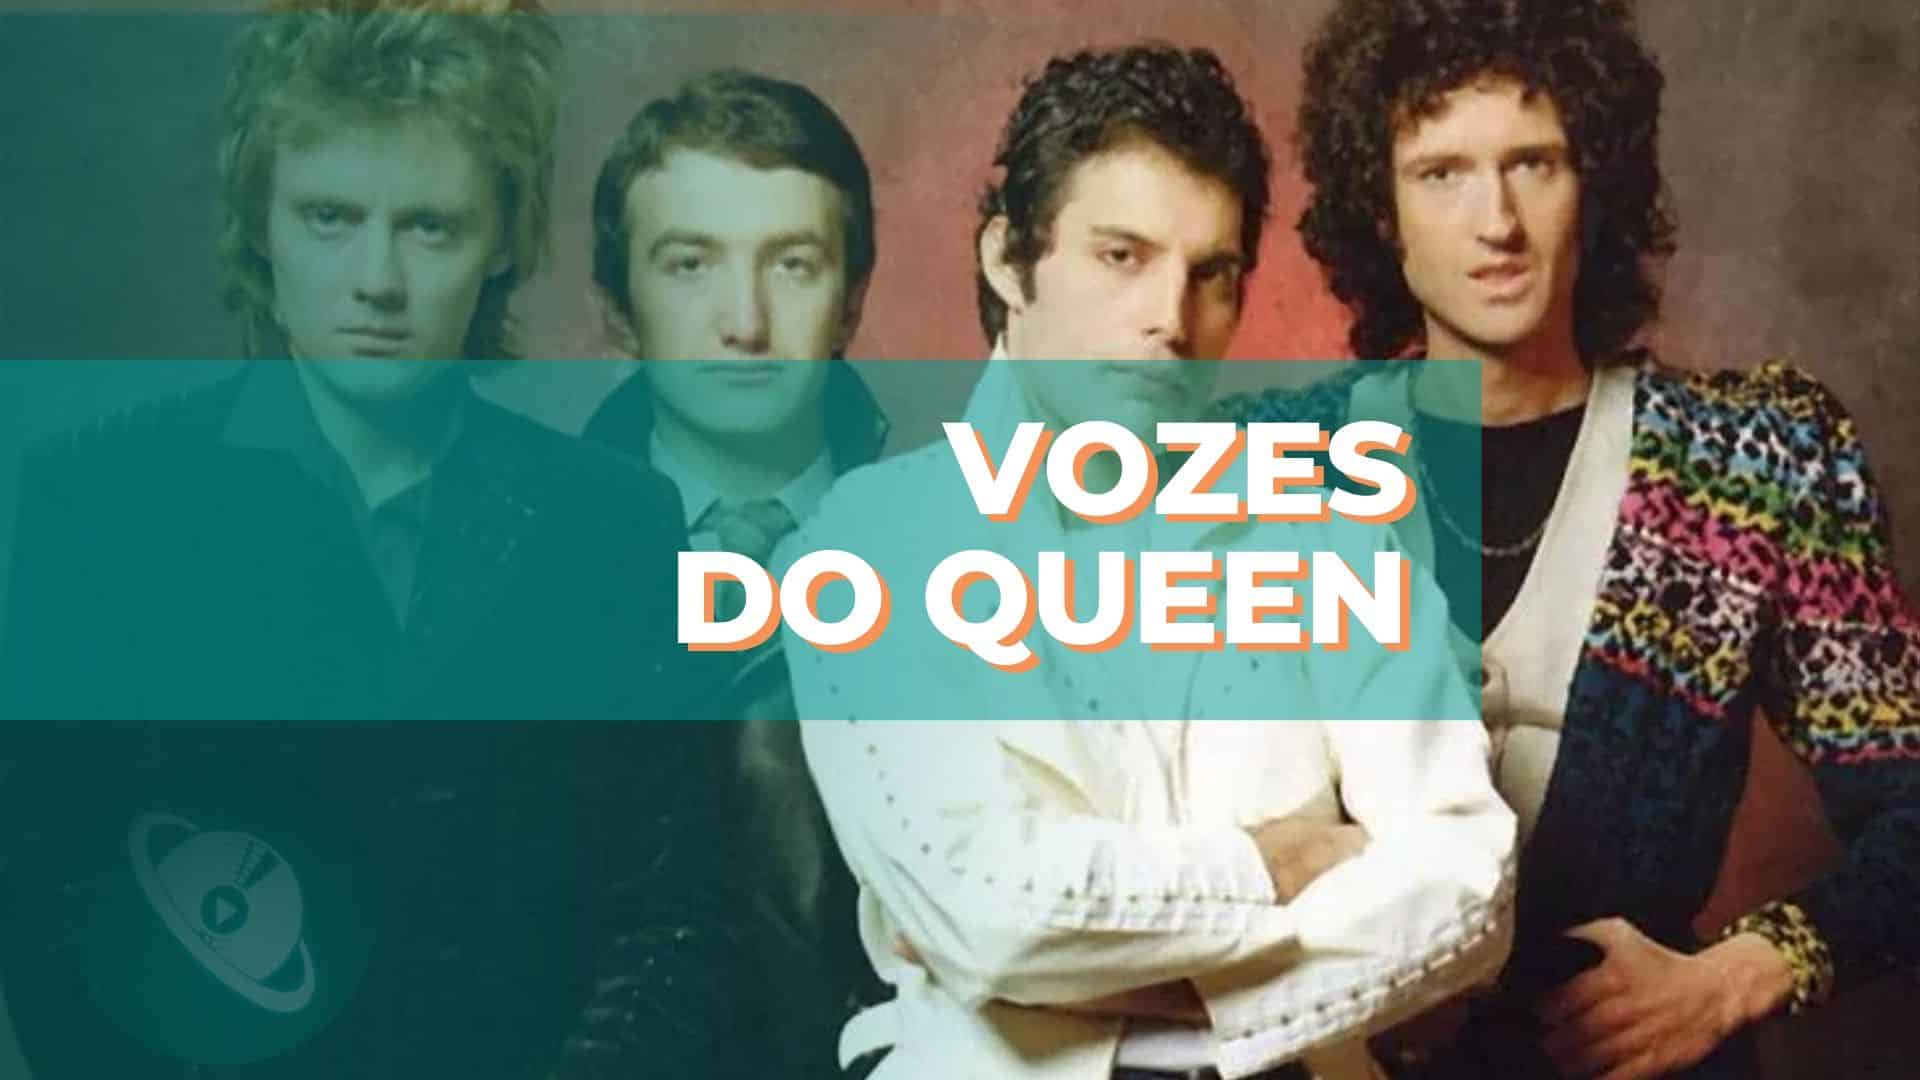 As vozes do Queen